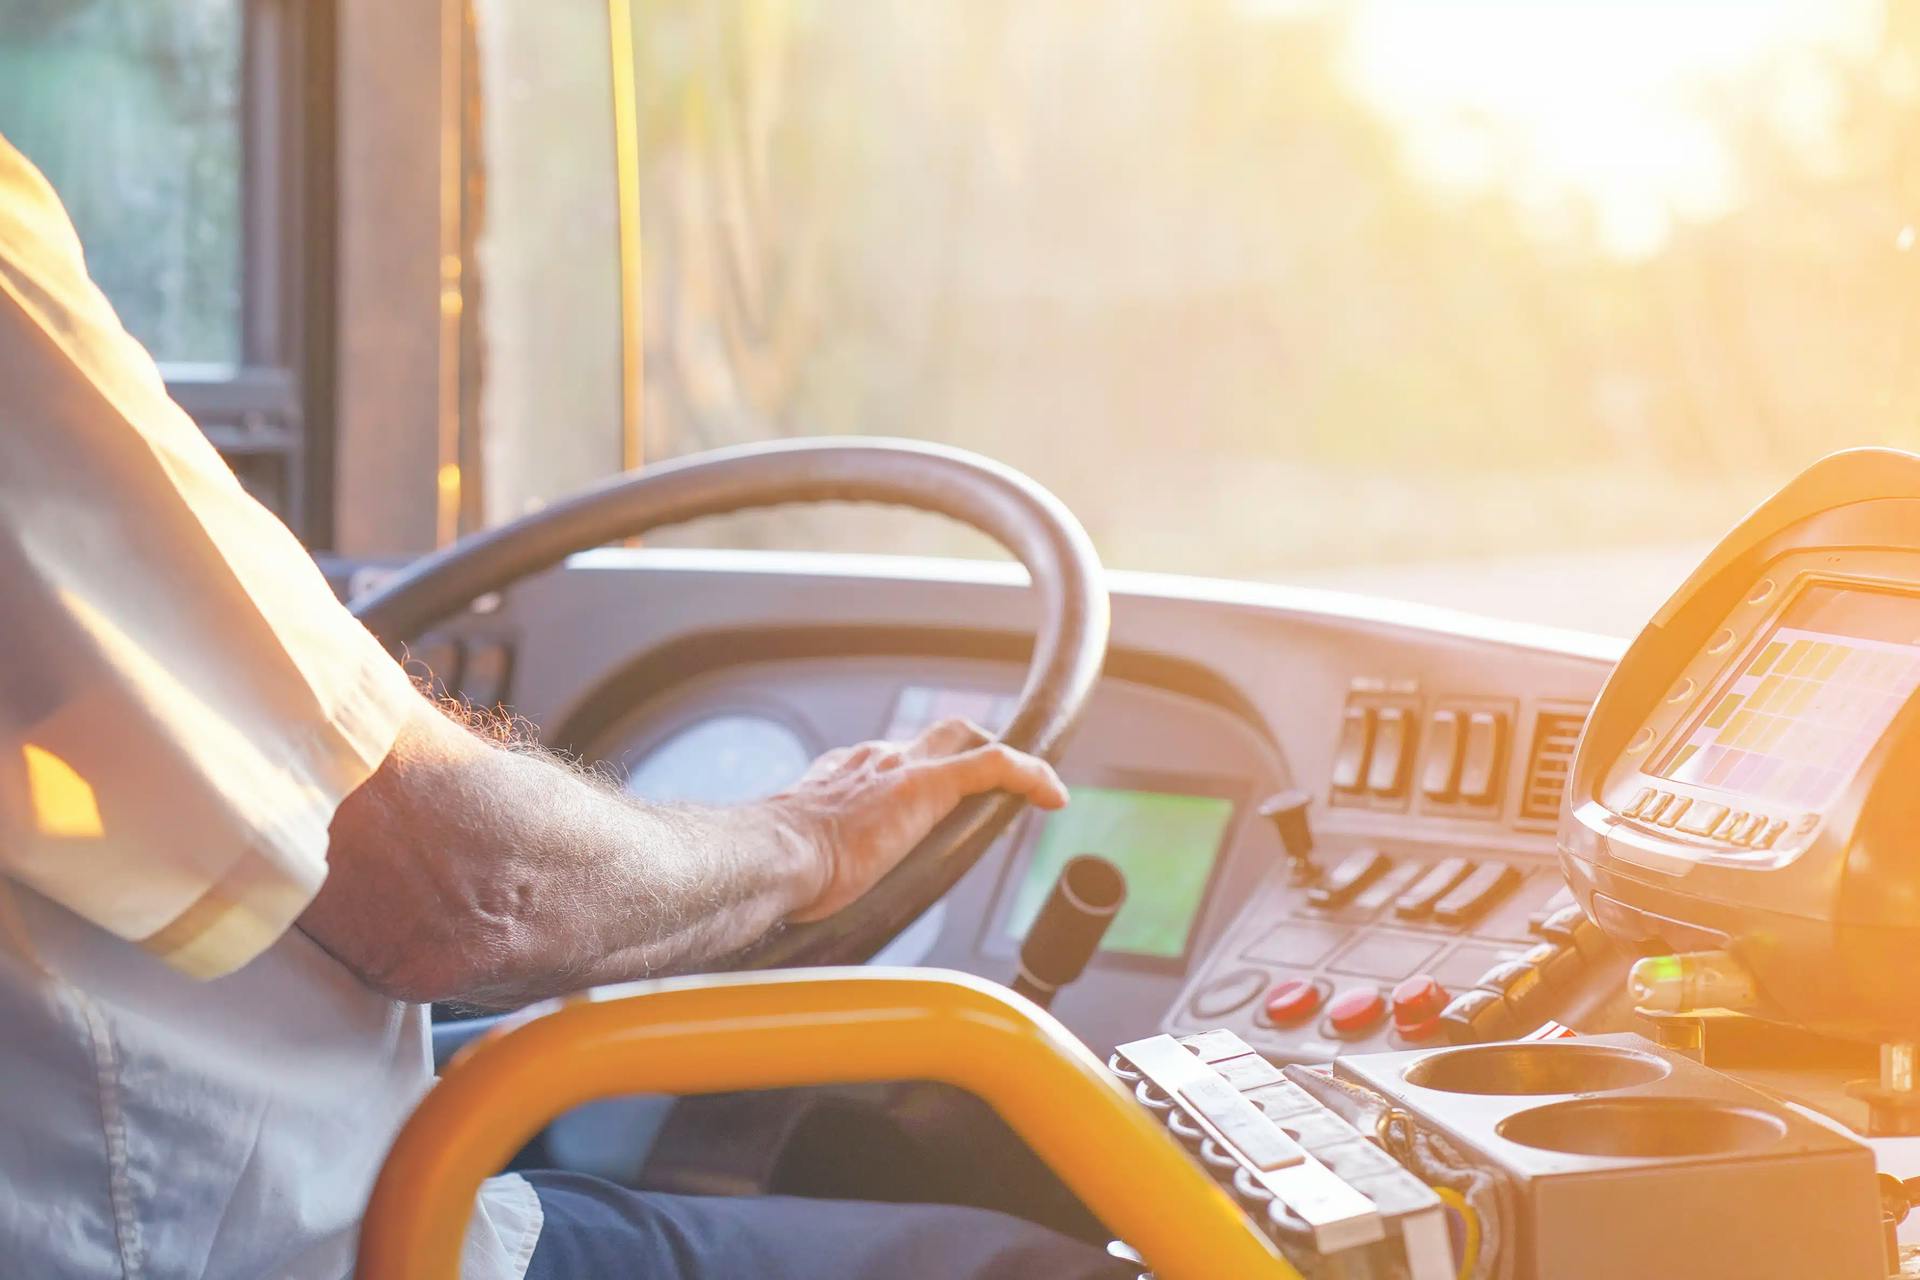 TRF4: Motorista e cobrador de ônibus tem direito a aposentadoria especial pela PENOSIDADE